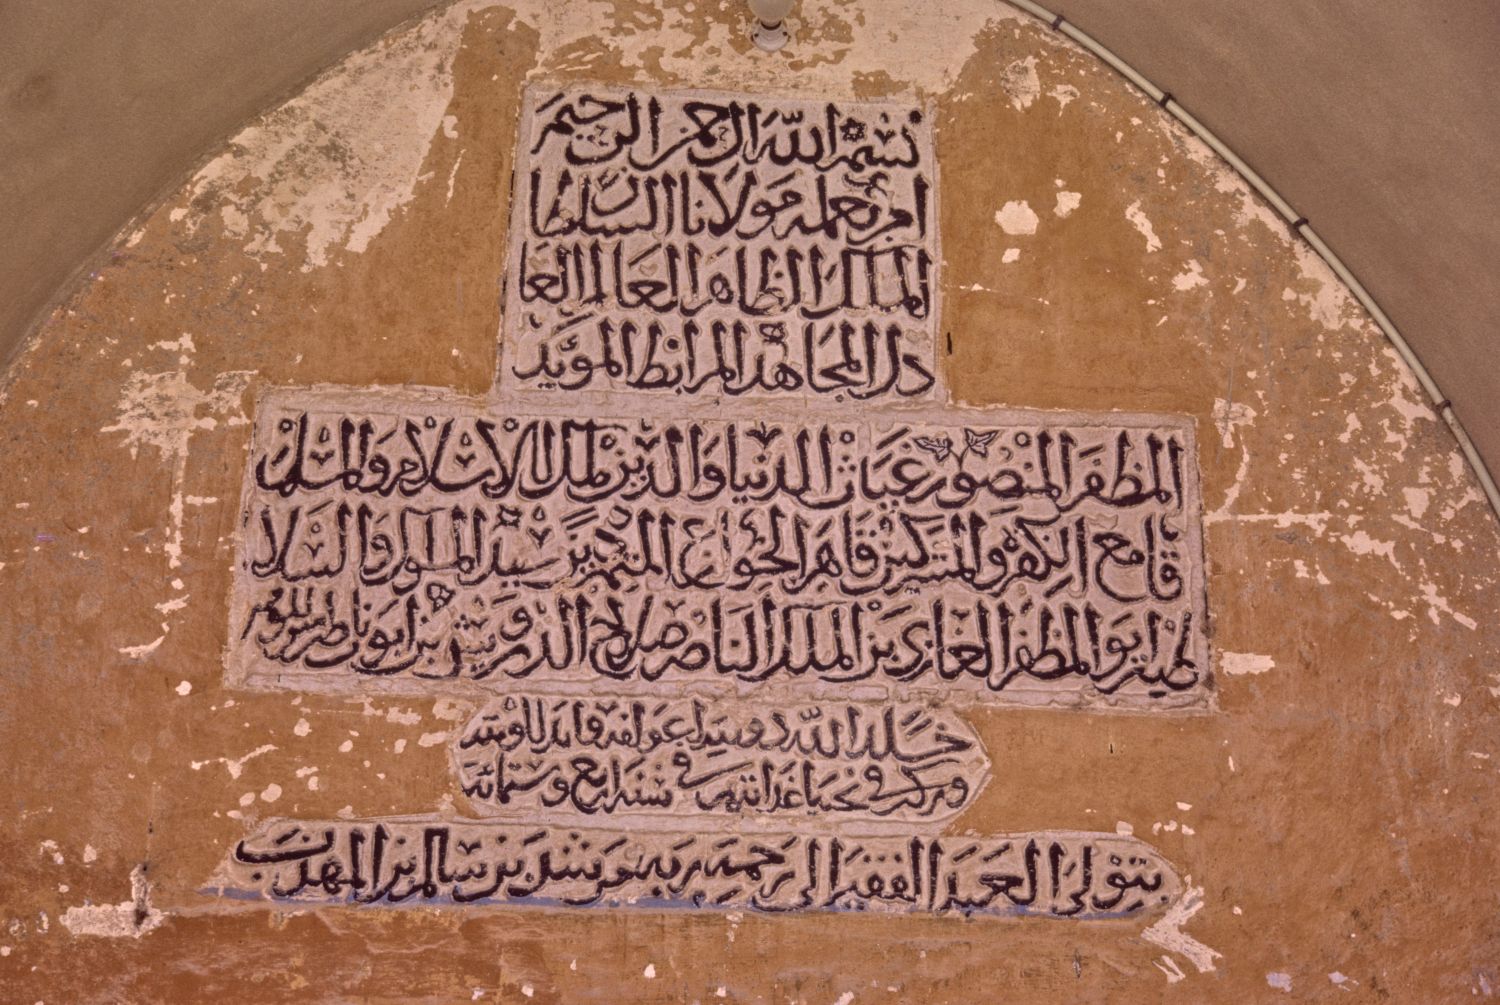 Inscription dated 1207/604 AH